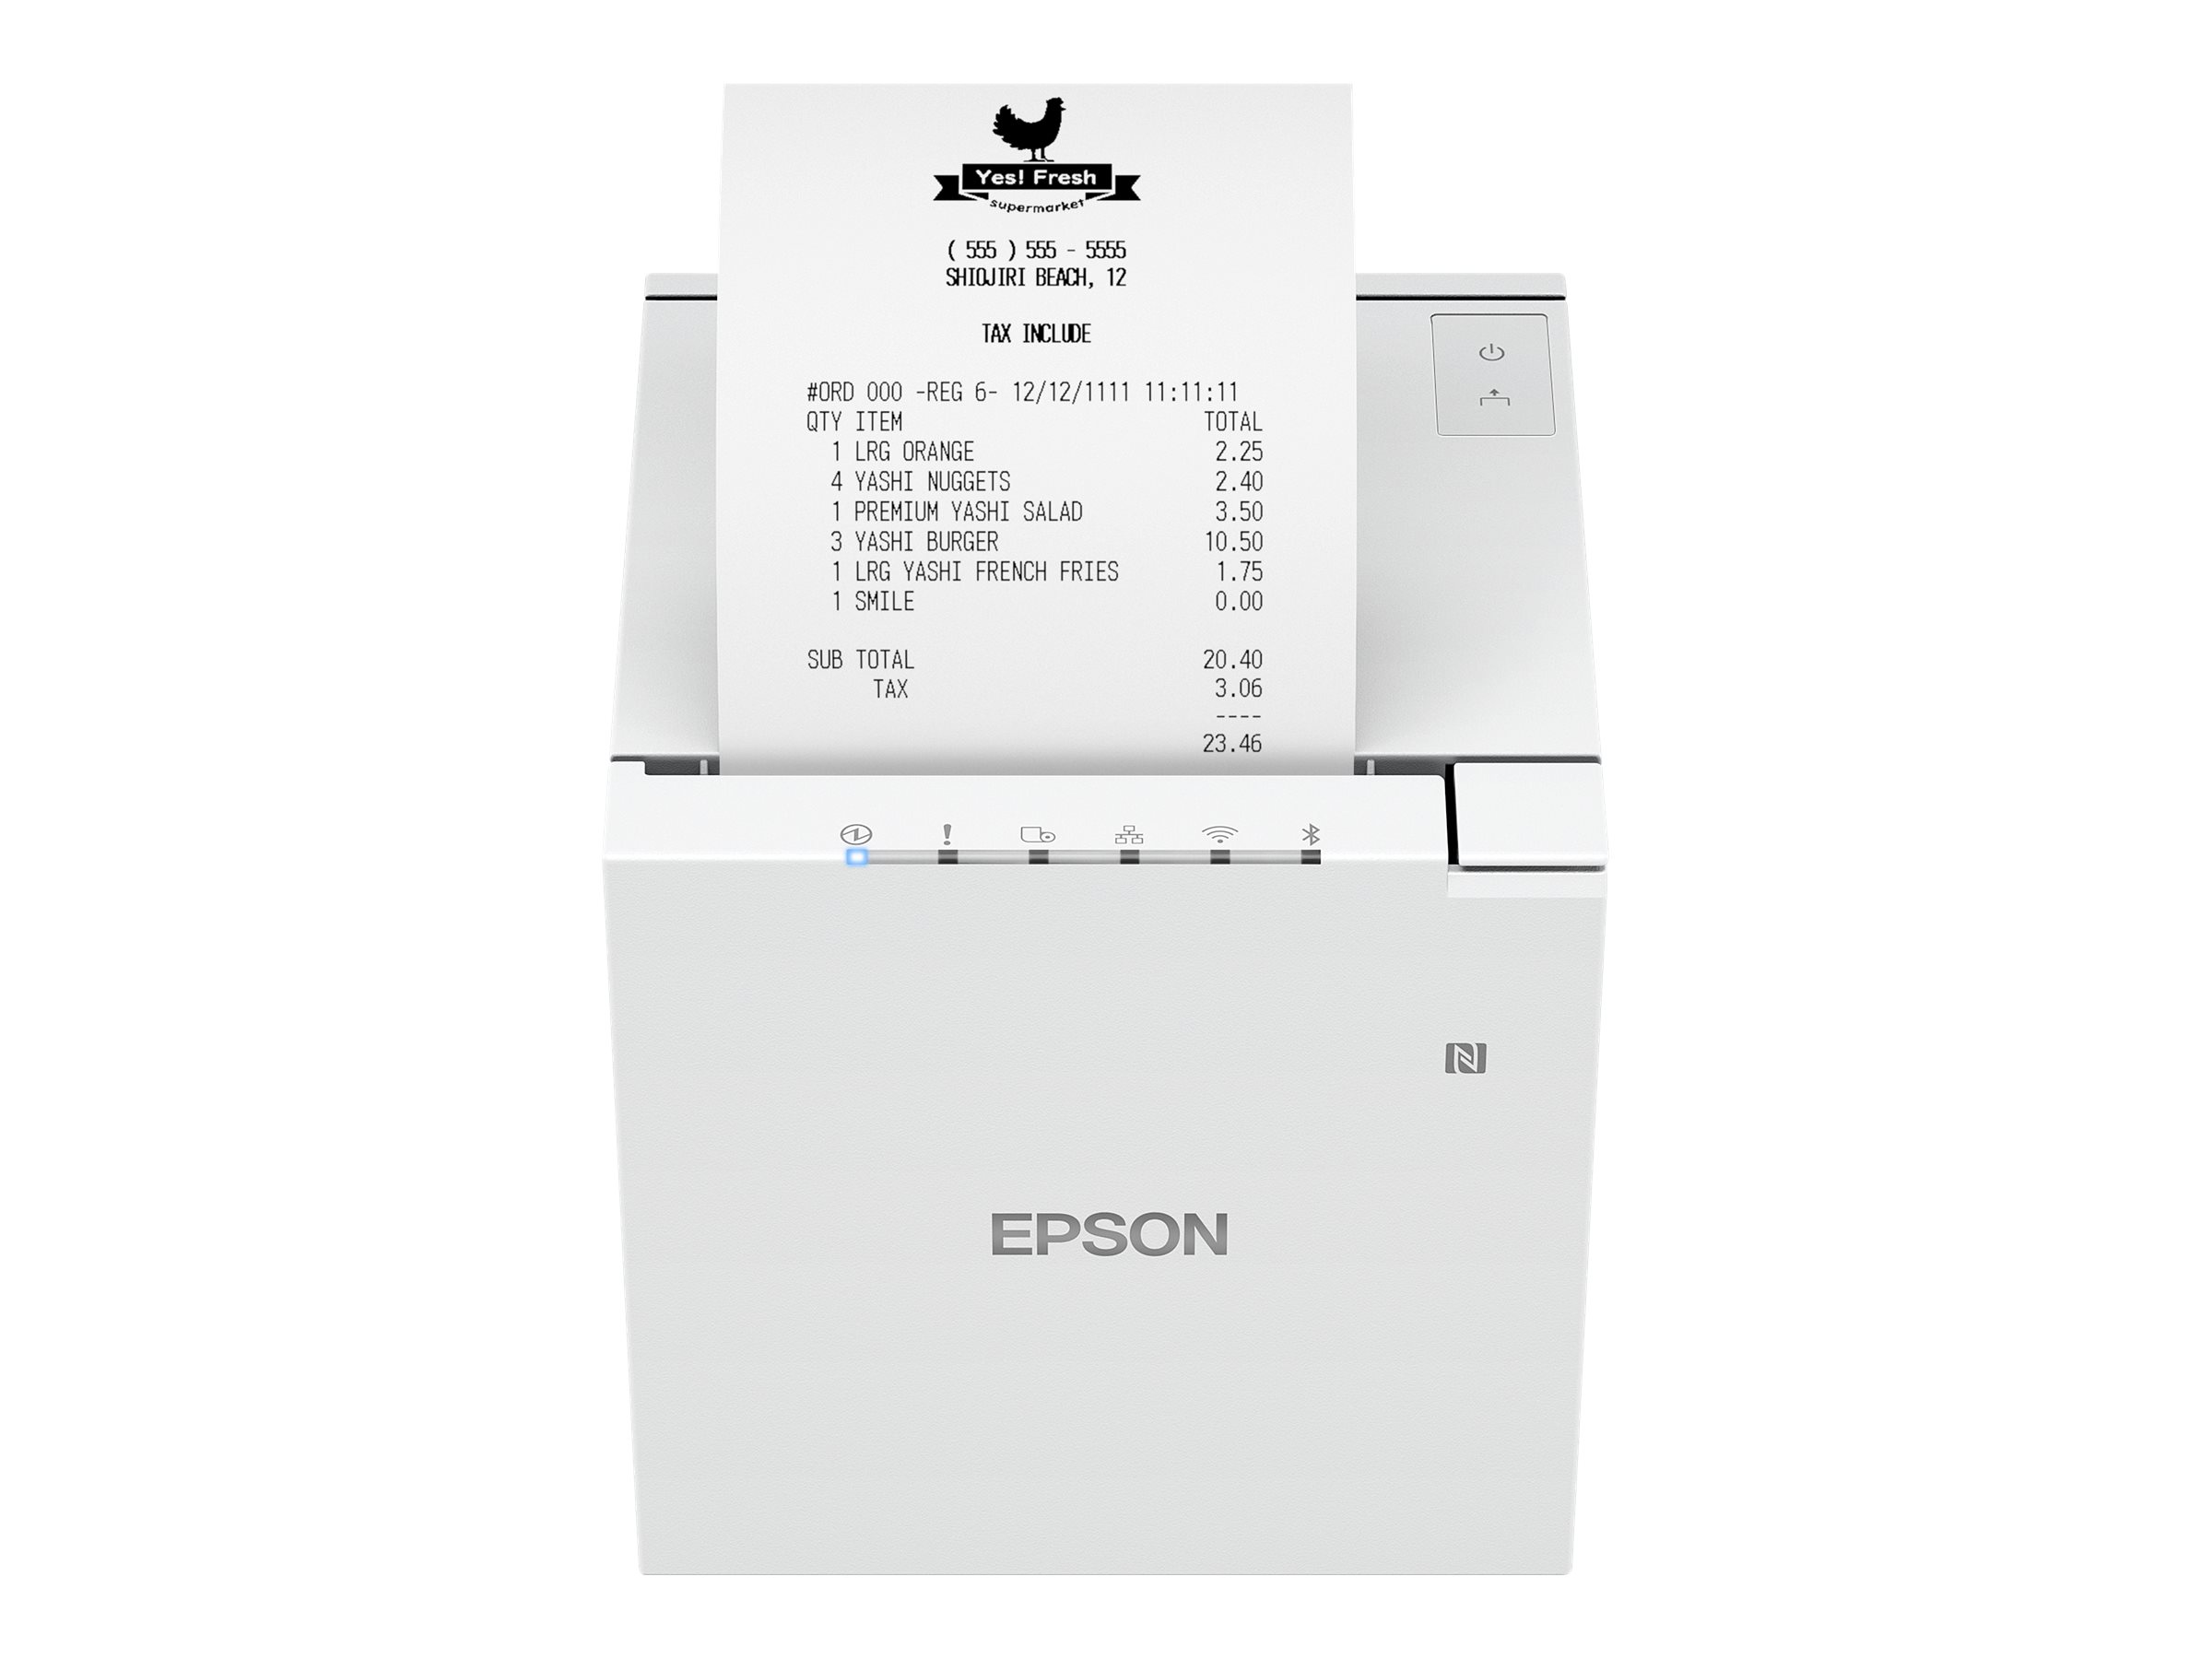 Epson Ethernet LAN USB POS Receipt Printer